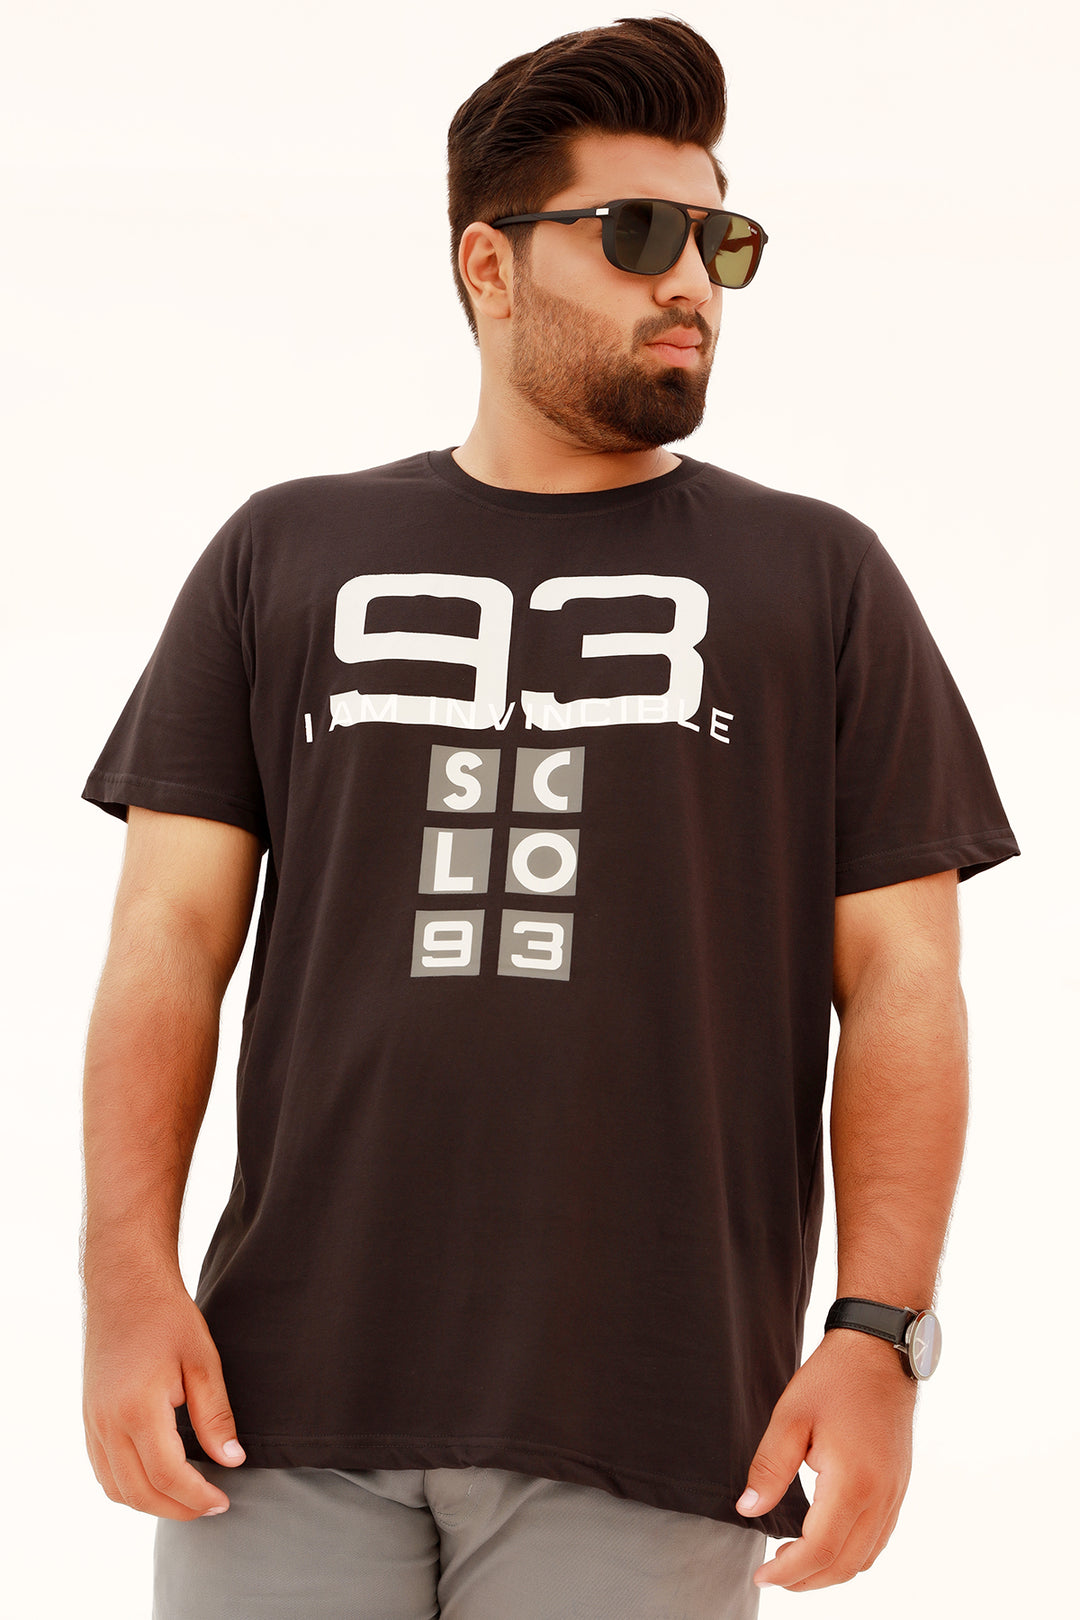 Invincible Graphic T-Shirt (Plus Size) - S22 - MT0149P